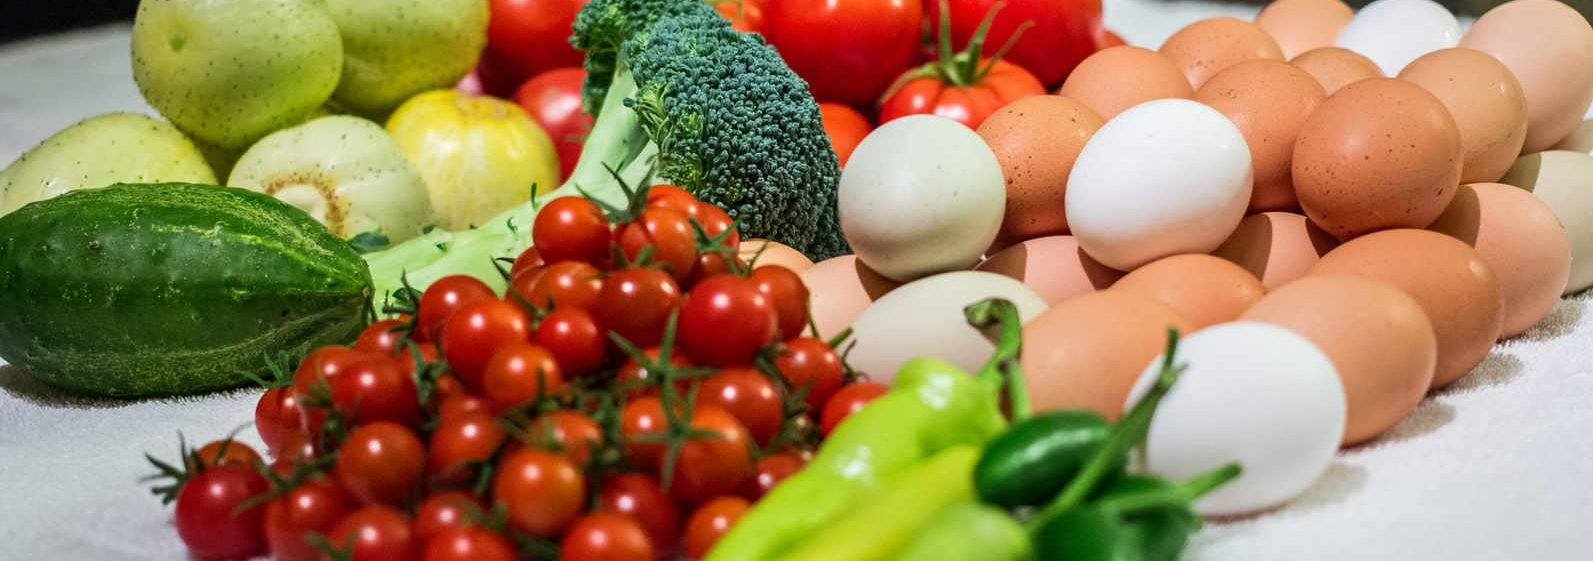 Imagen a color de verduras frescas y huevos